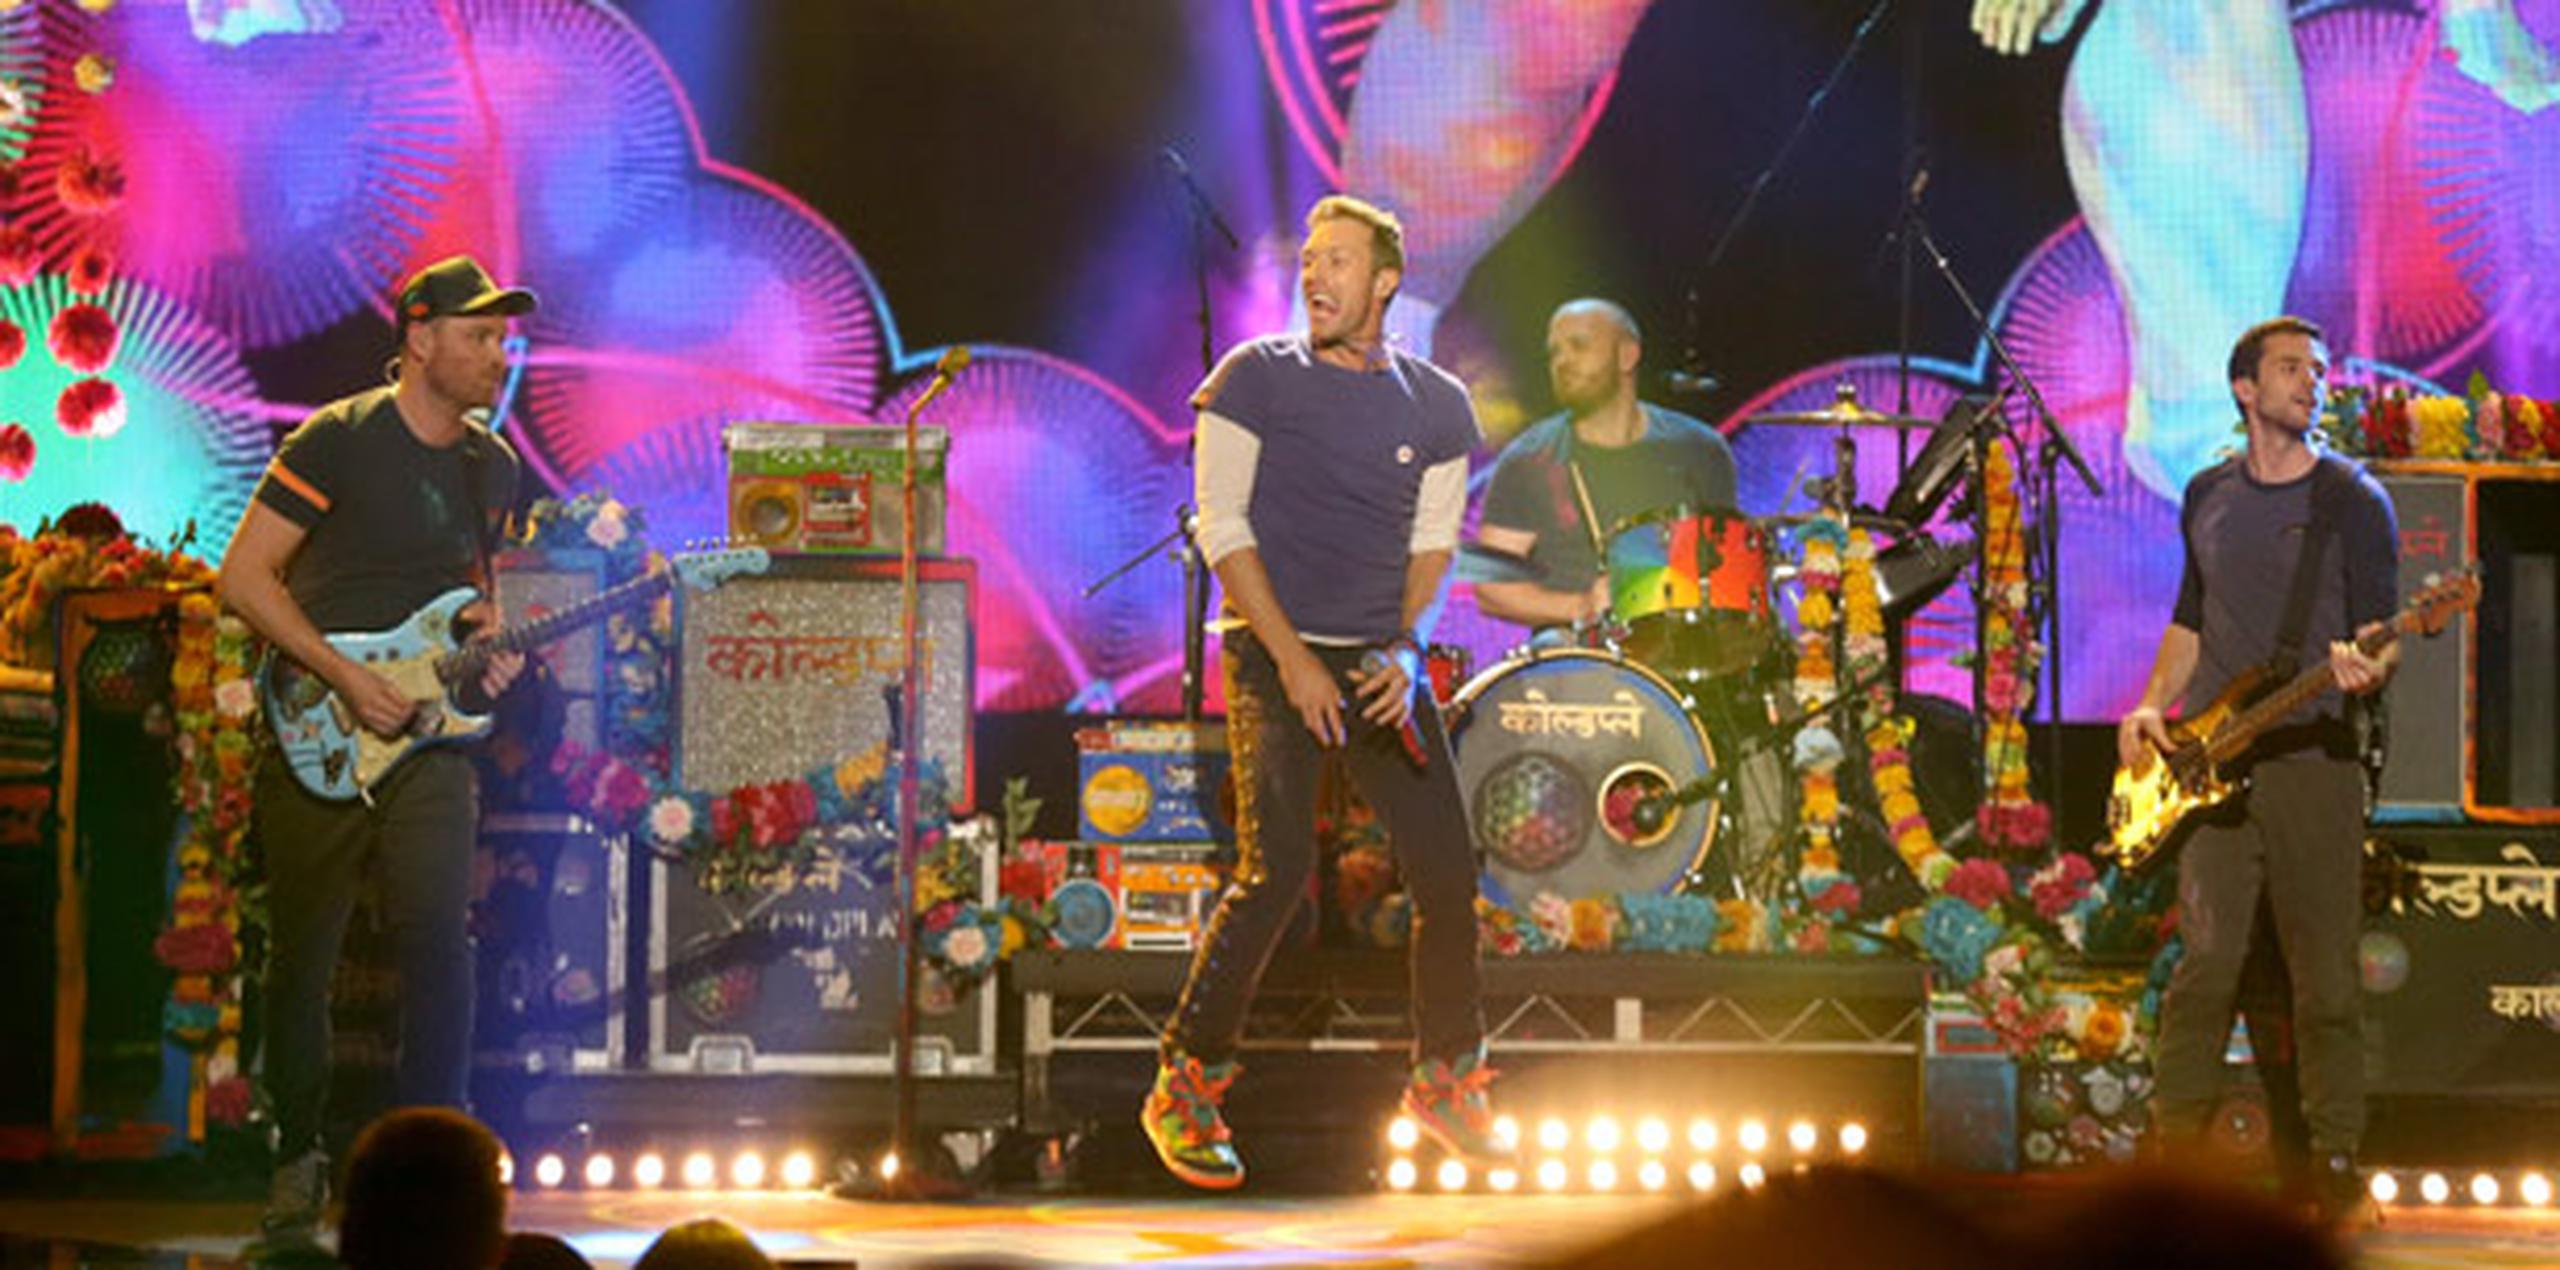 Coldplay se está asegurando de lograr superar la vistosa presentación de Katy Perry el año pasado. (Archivo/AP)